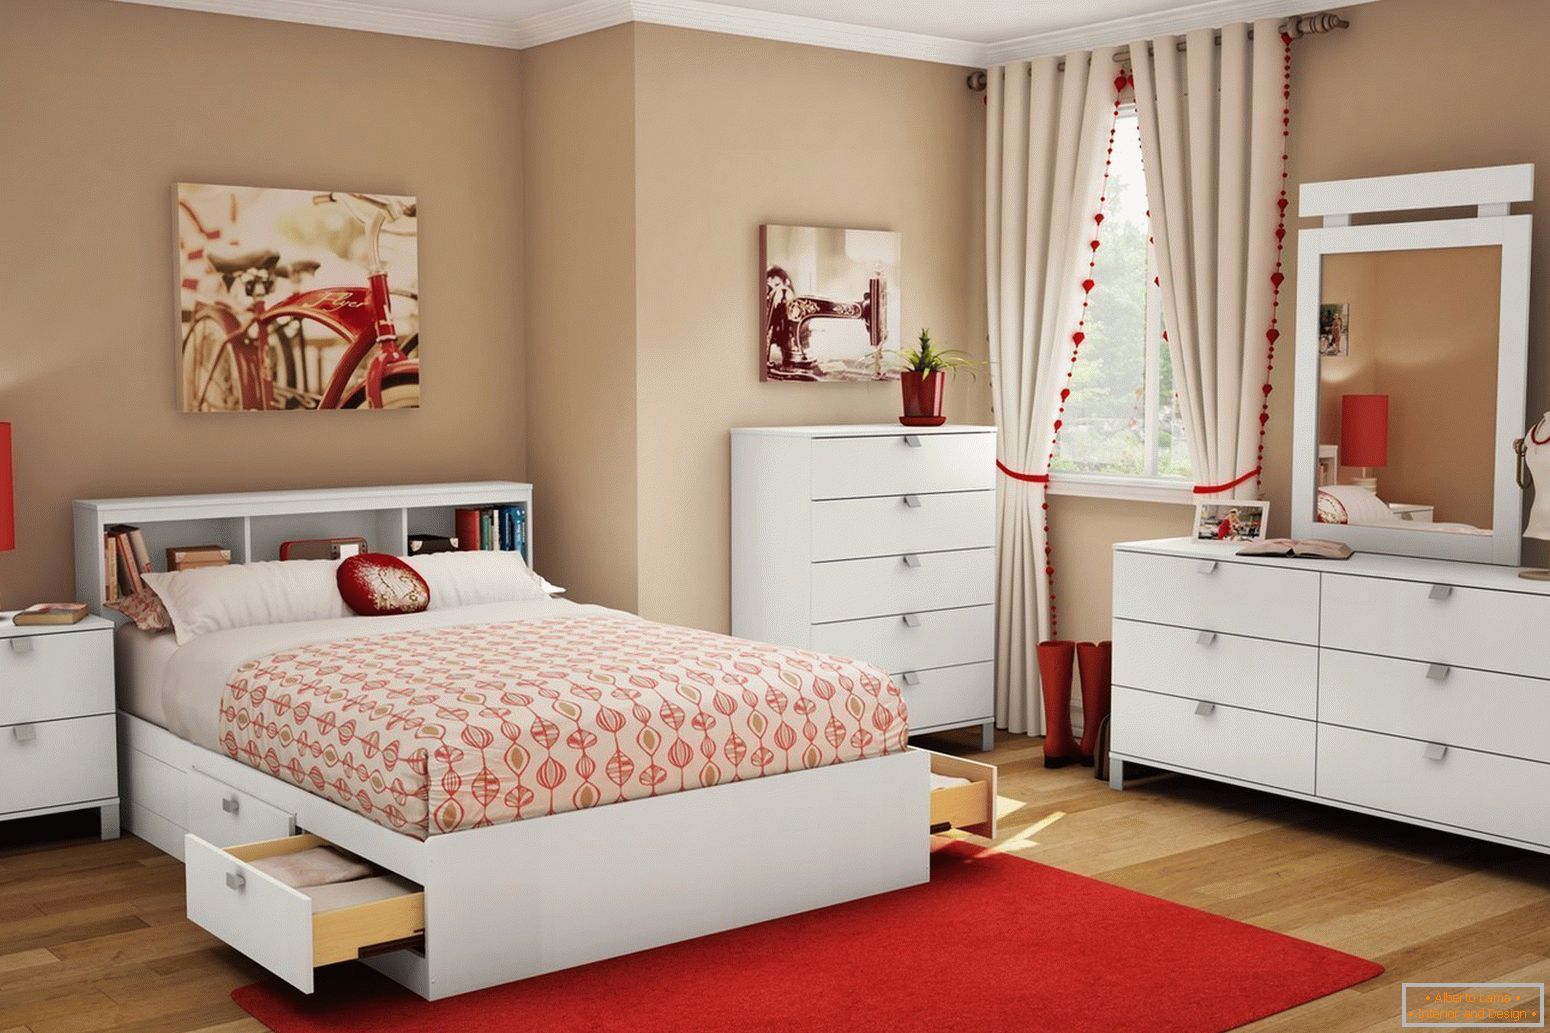 Set of bedroom furniture